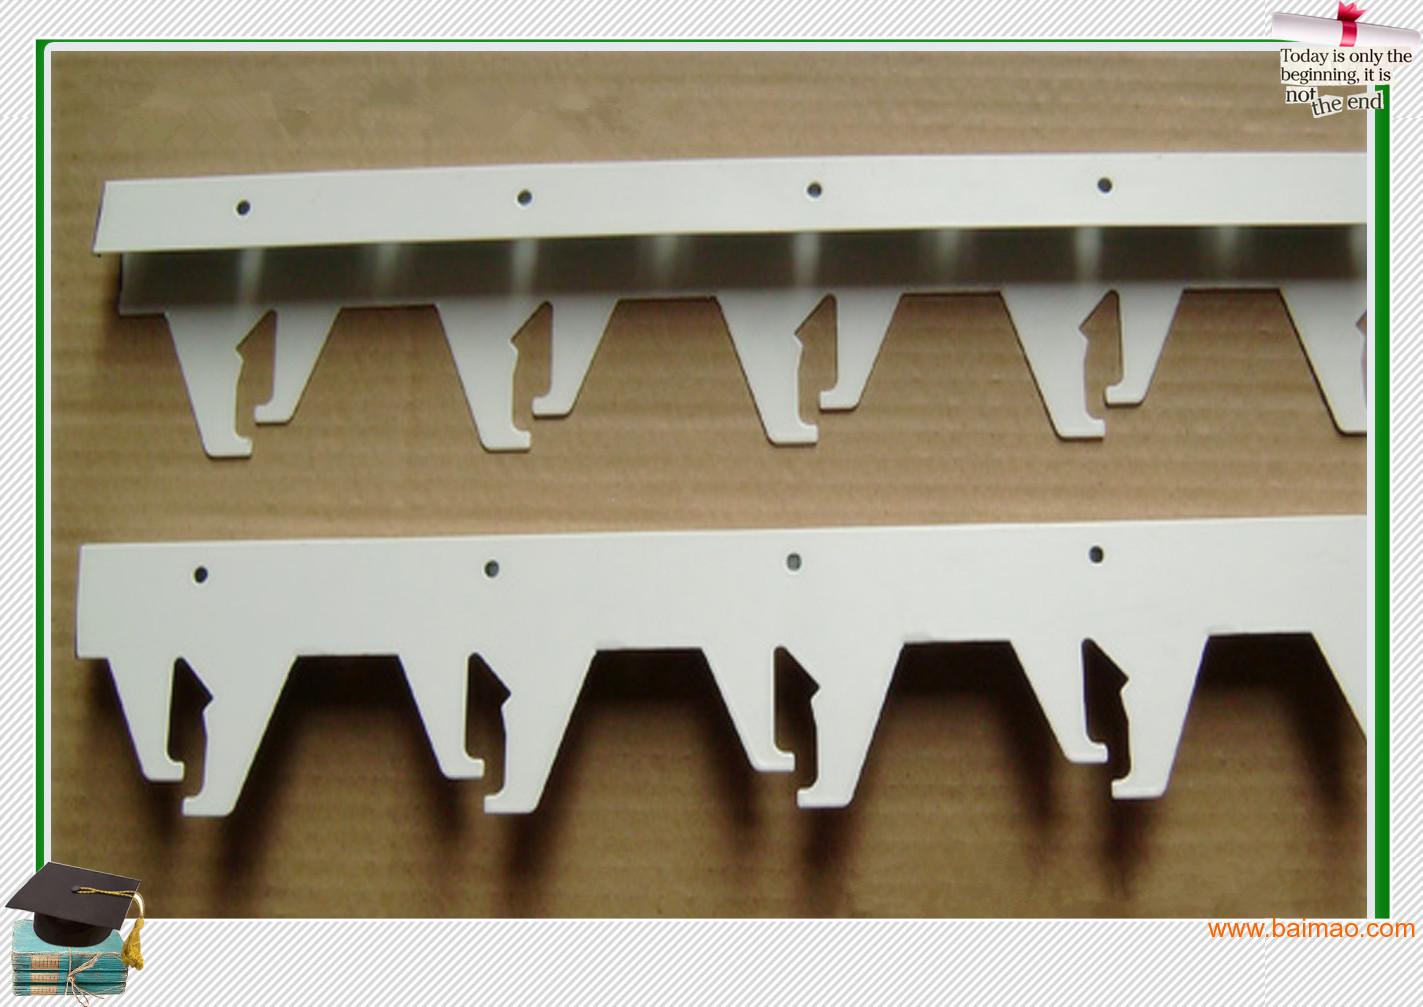 胆型铝合金挂片吊顶安装注意事项广州铝挂片厂家